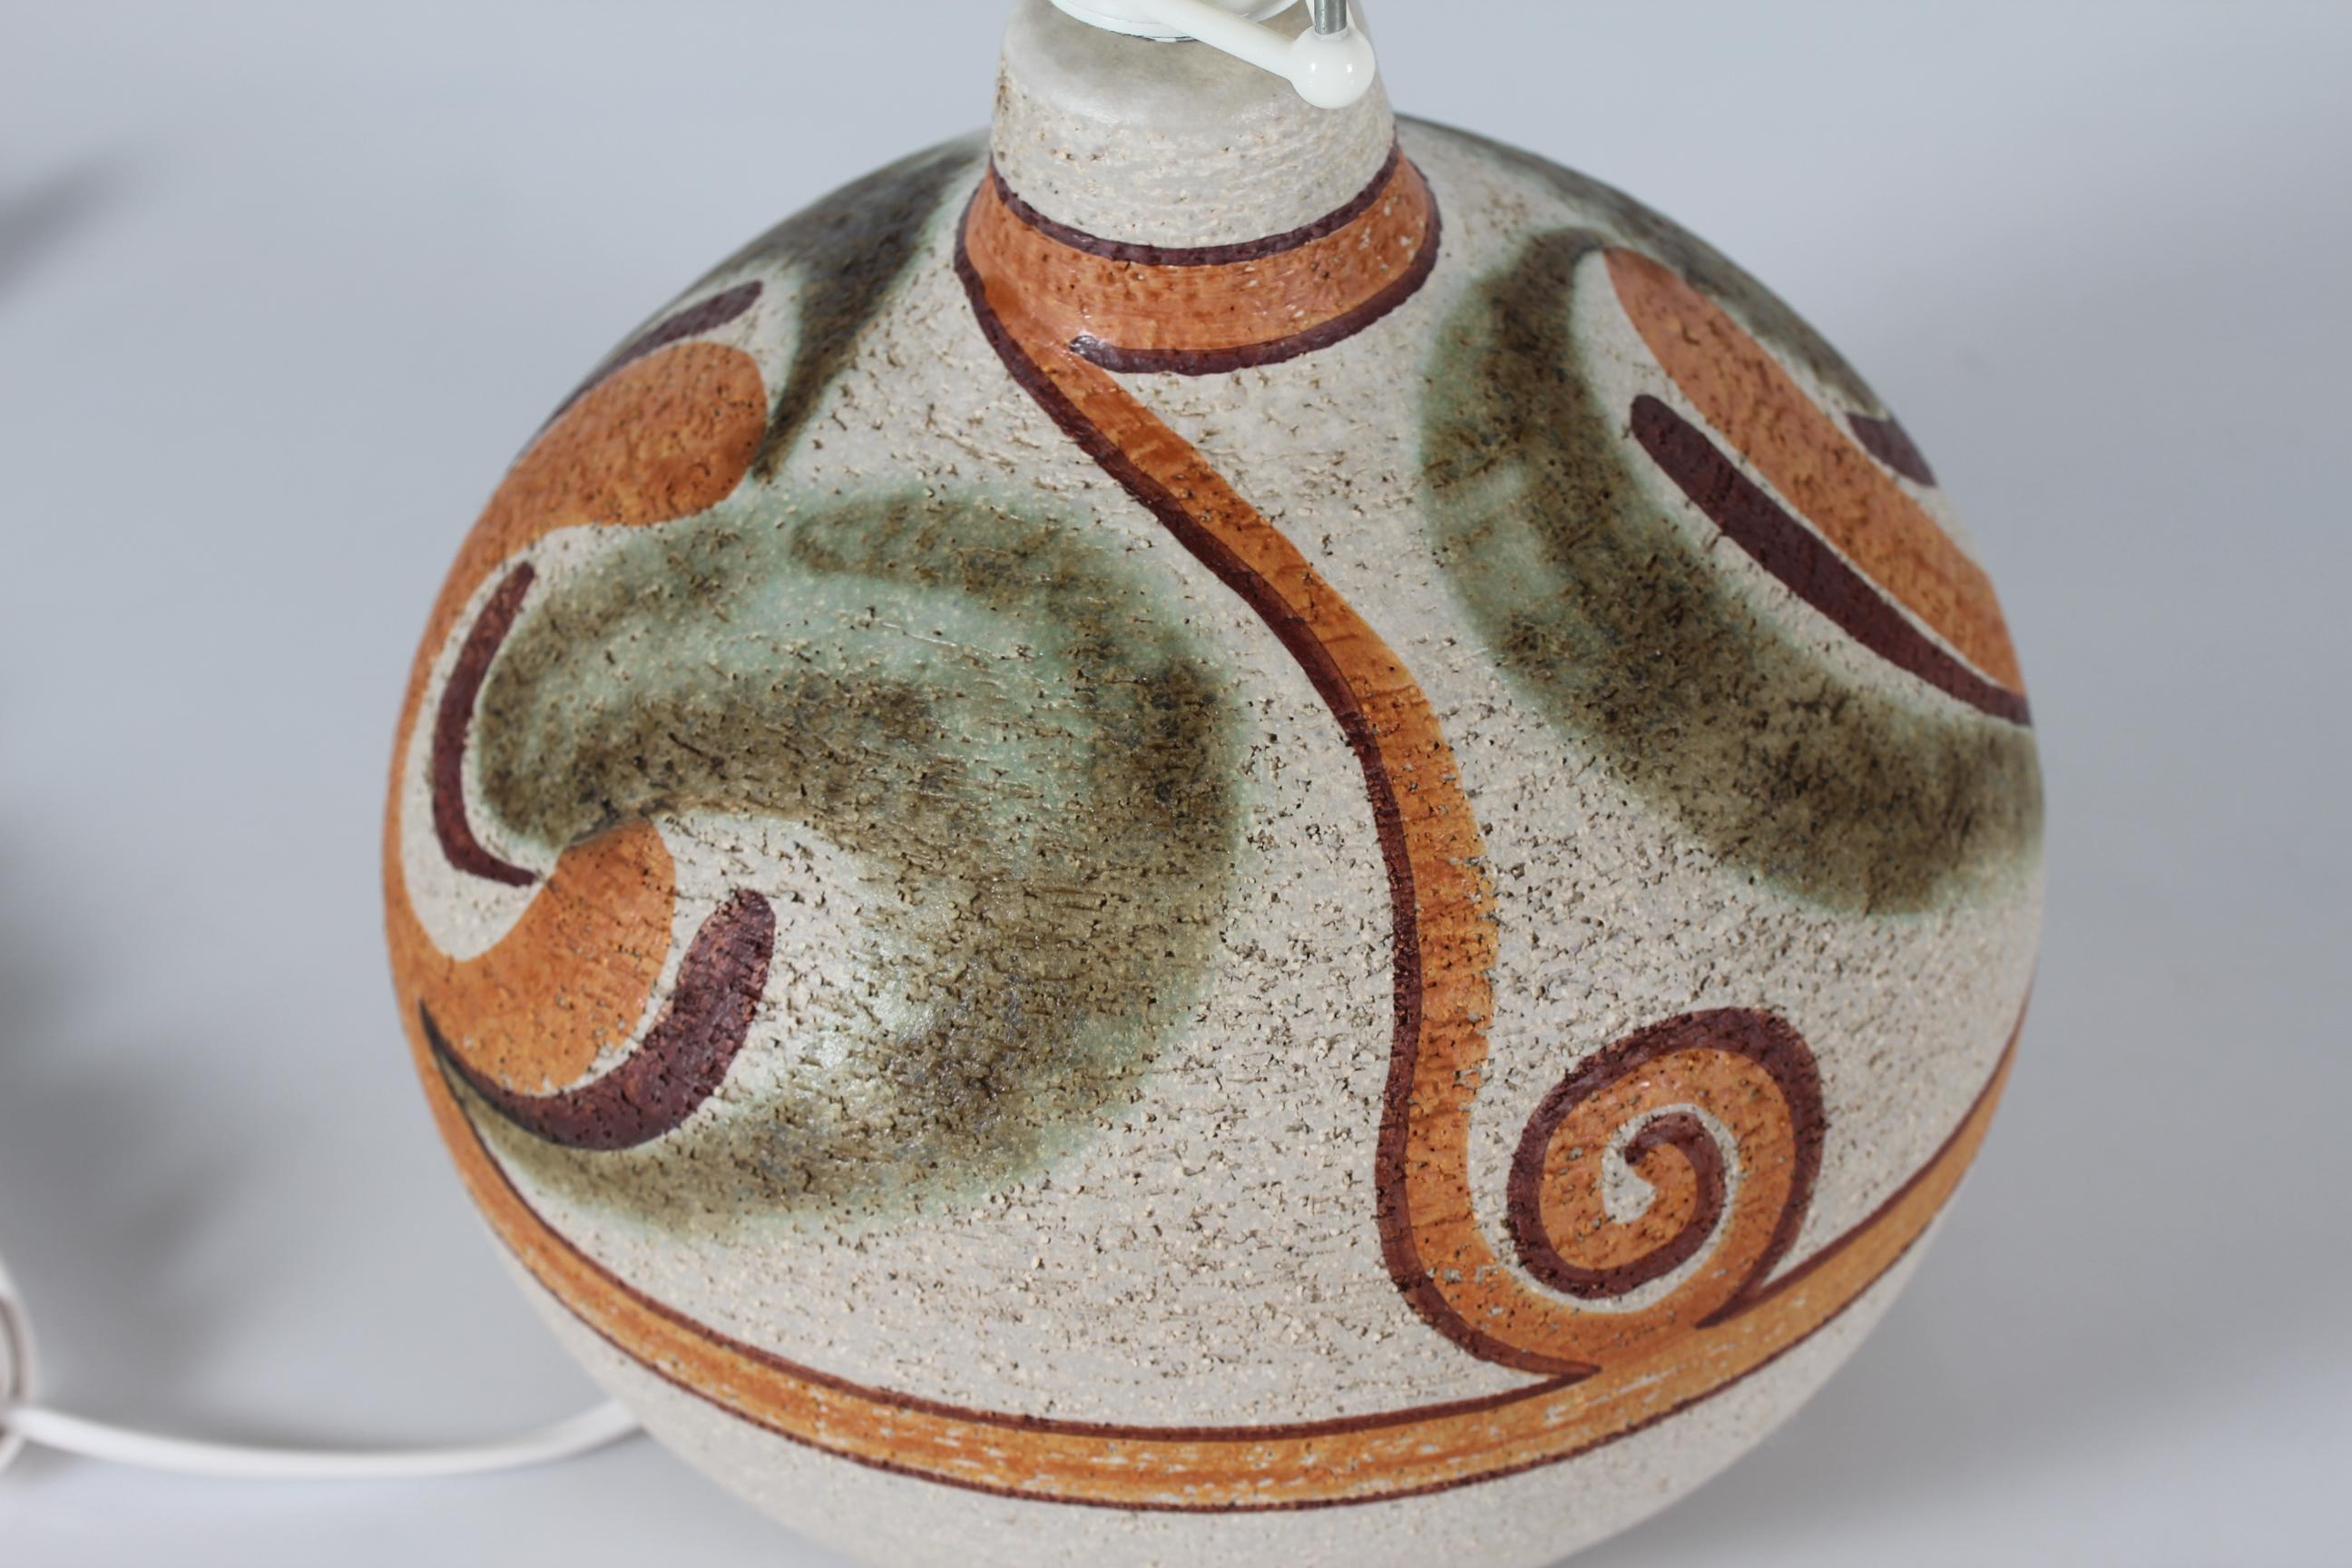 Große runde Keramik-Tischleuchte, entworfen von Noomi Backhausen für Søholm Stentøj, Bornholm, Dänemark
Der Lampenfuß aus Steingut ist handgefertigt aus Schamotte-Ton, was ihm eine rustikale Oberfläche verleiht, die durch die Dekoration in